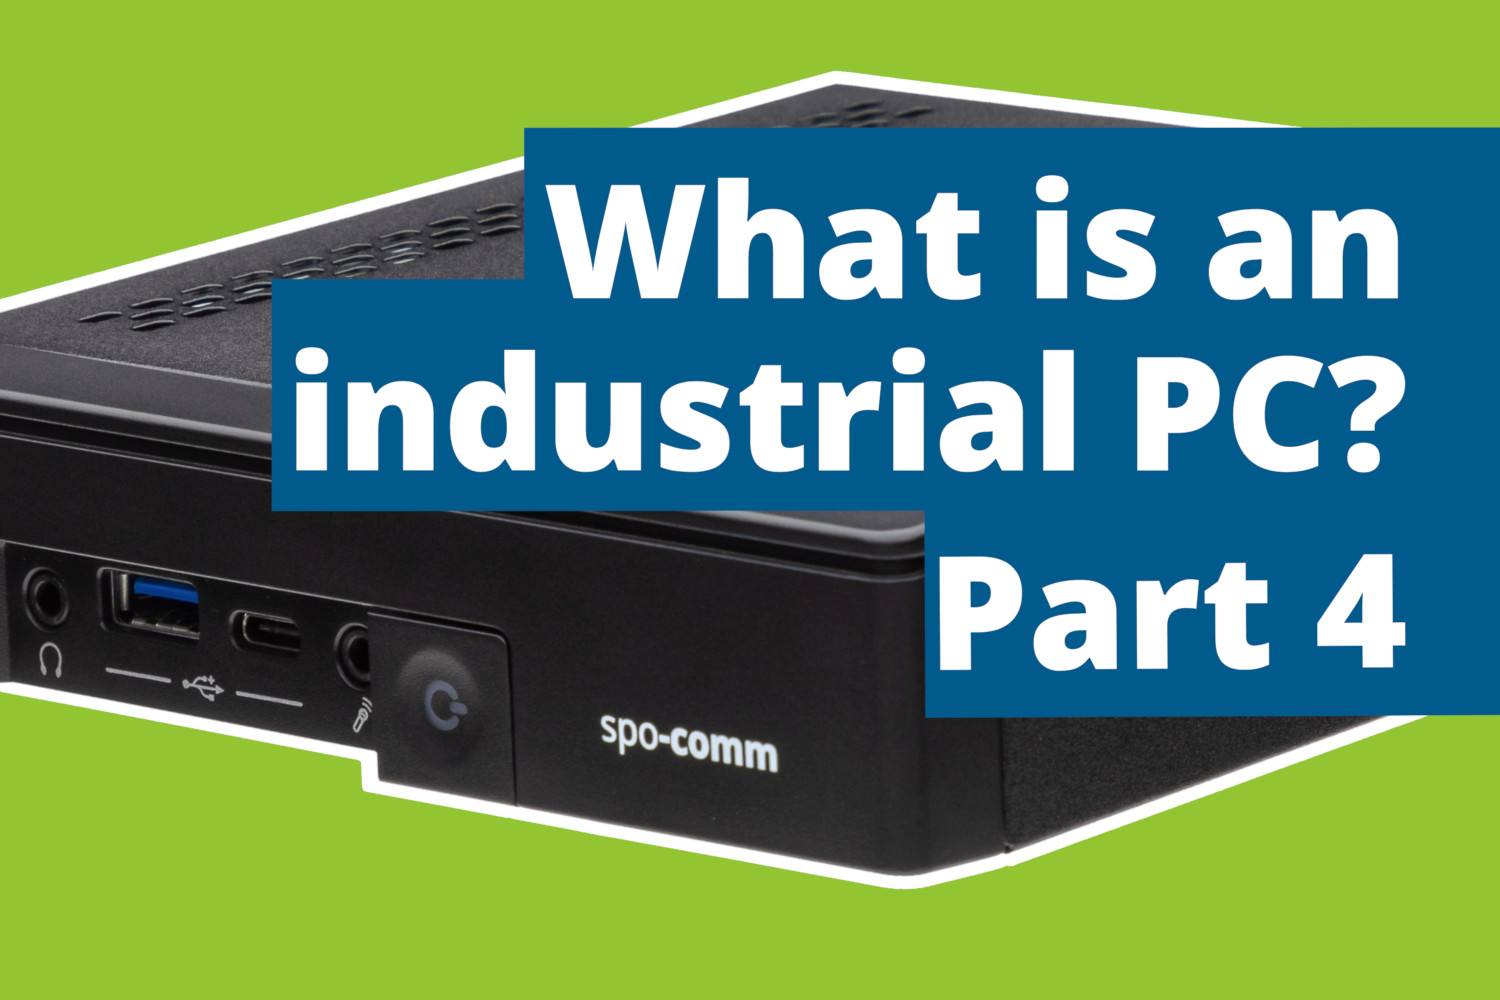 Industrial PCs part 4: Compact design